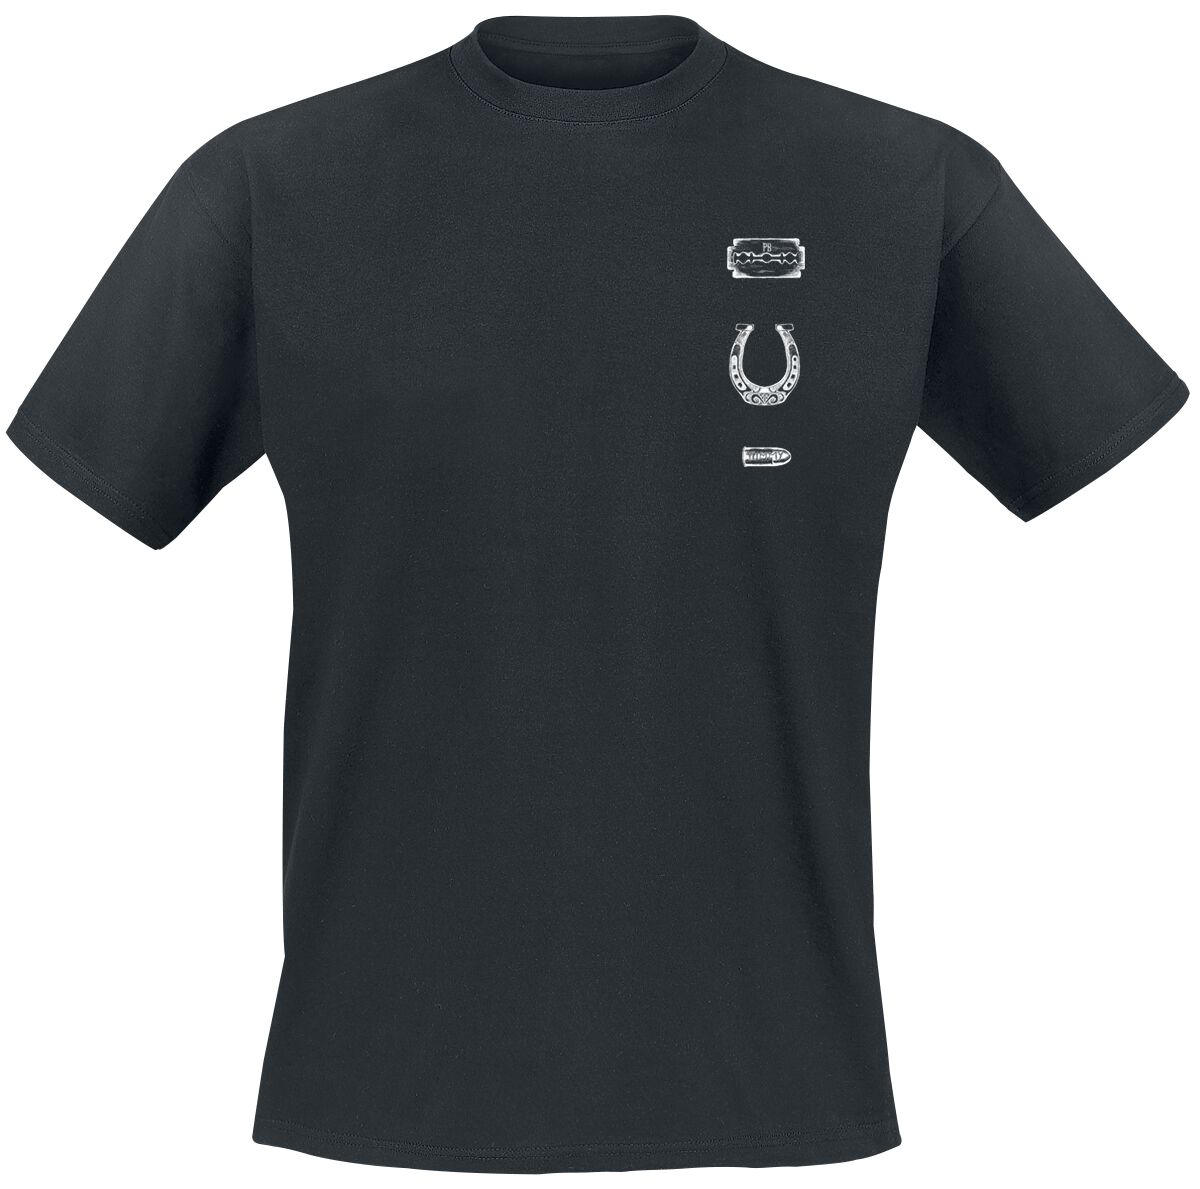 Peaky Blinders T-Shirt - The Shelby Company - M bis XXL - für Männer - Größe XXL - schwarz  - Lizenzierter Fanartikel von Peaky Blinders